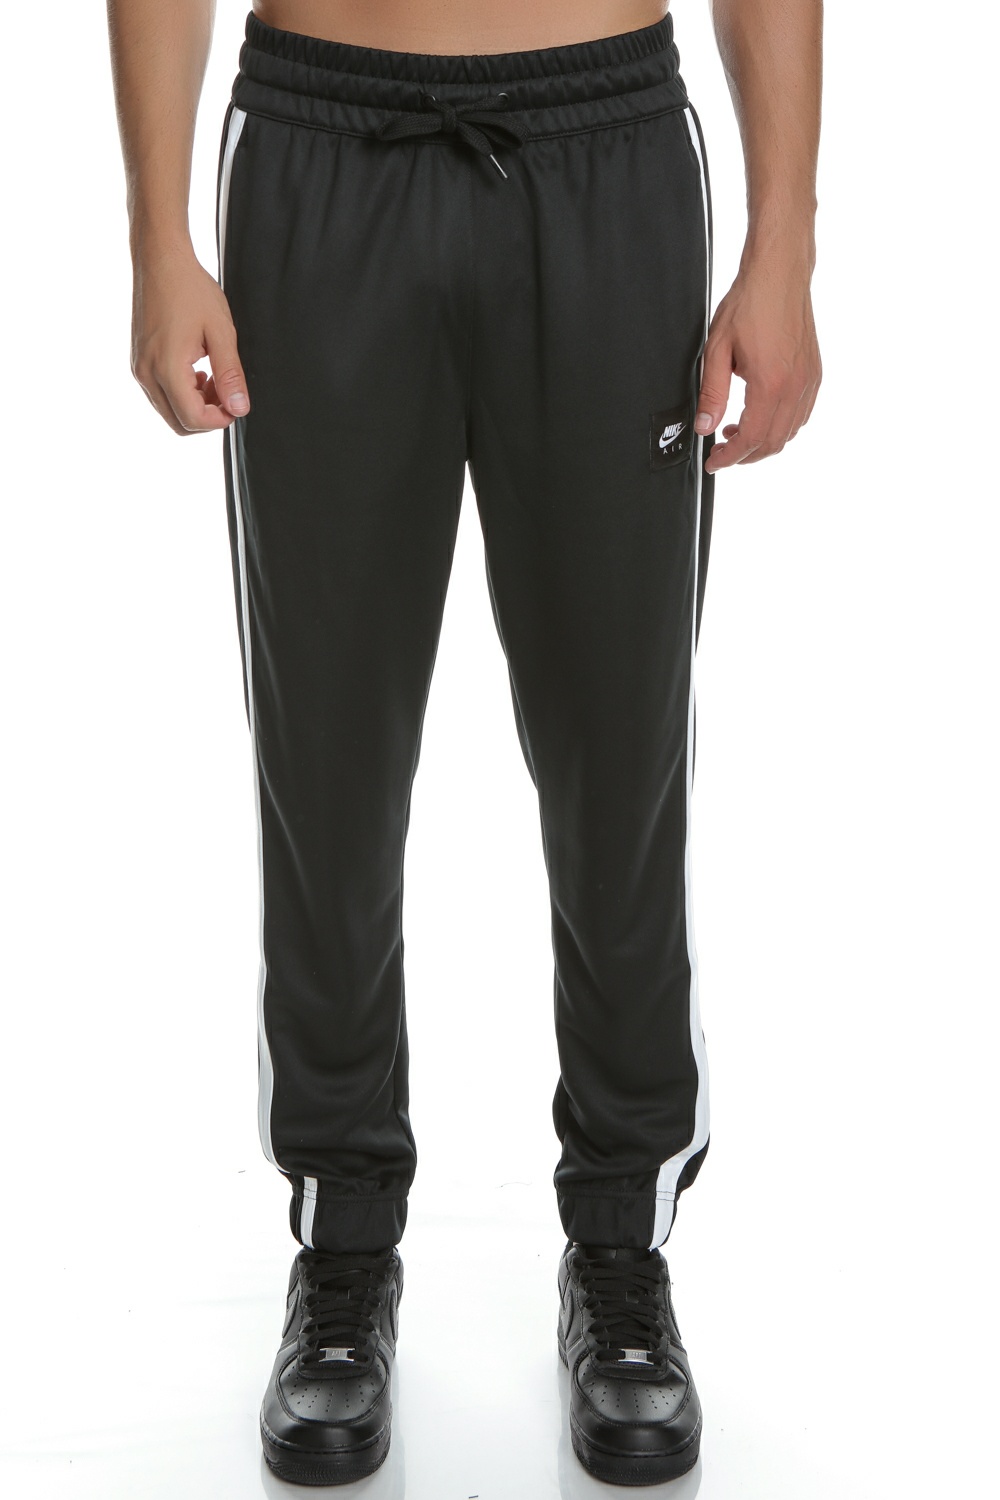 Ανδρικά/Ρούχα/Αθλητικά/Φόρμες NIKE - Ανδρικό παντελόνι φόρμας NIKE μαύρο